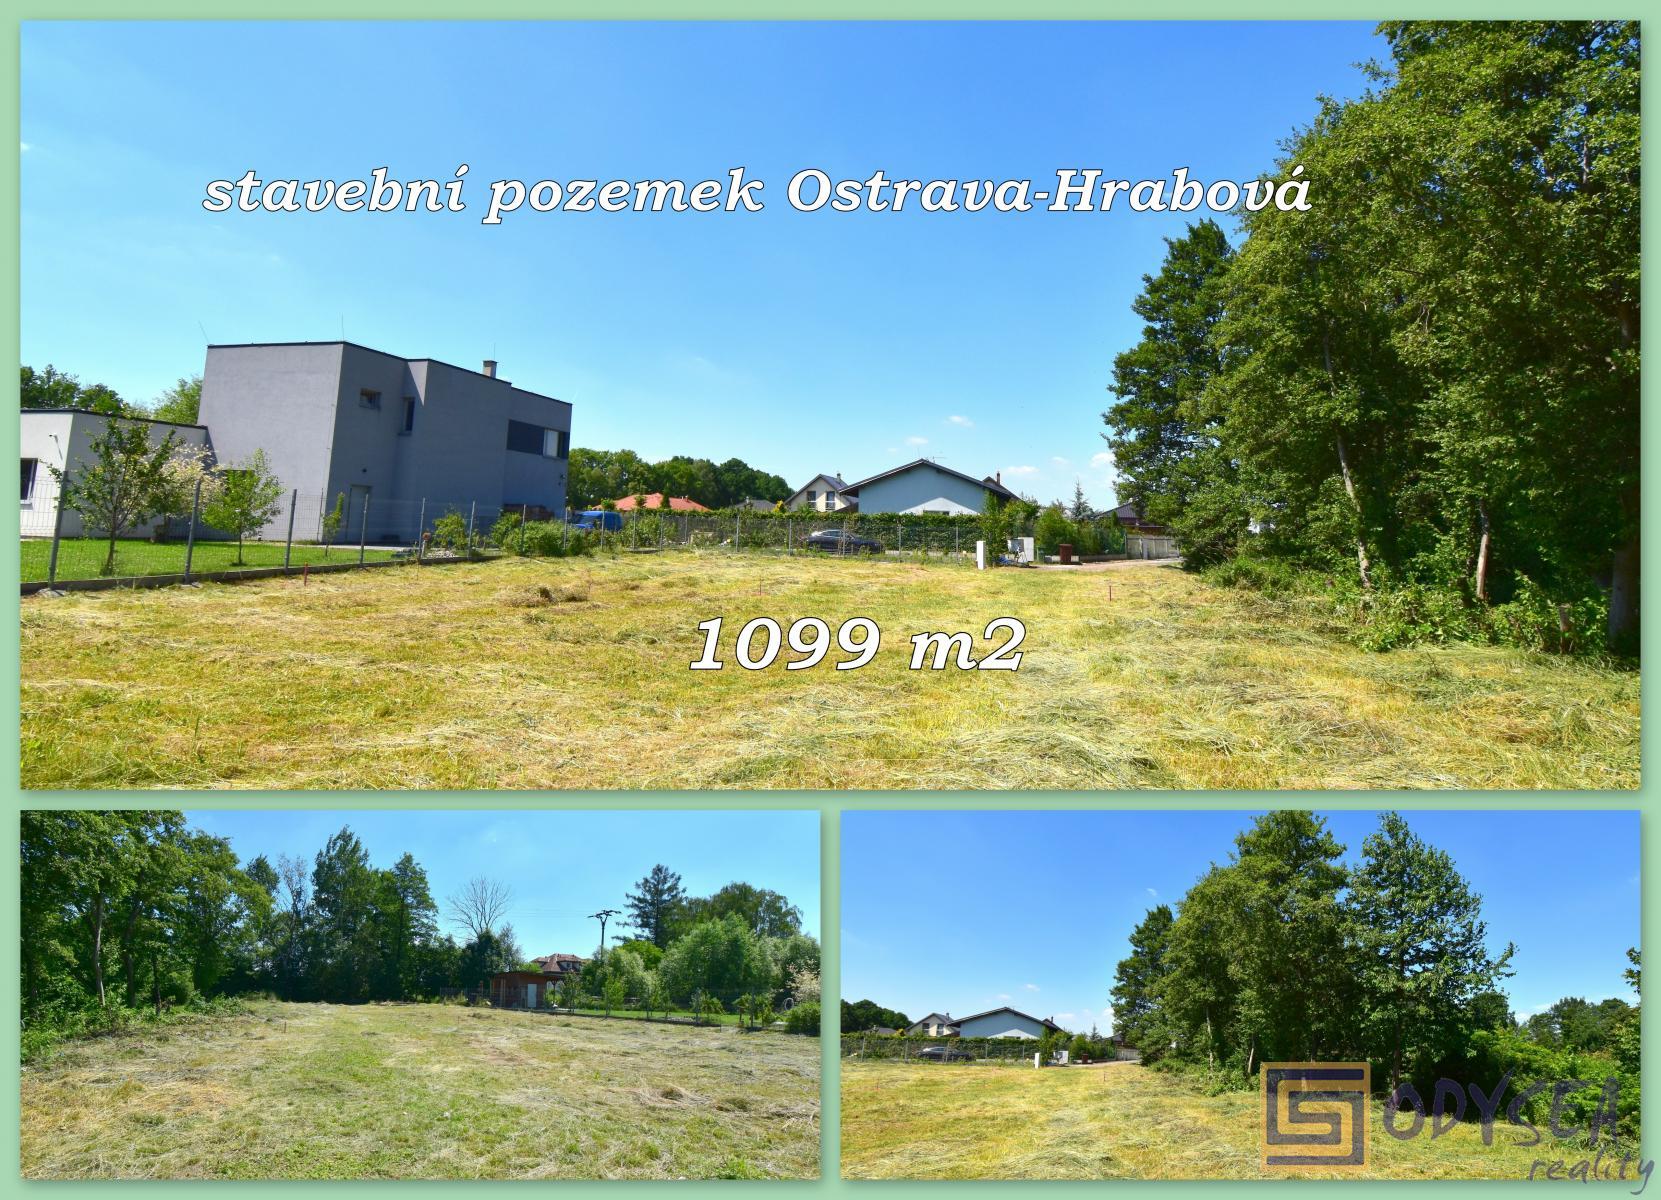 Stavební pozemek 1099 m2, Ostrava-Hrabová, okr. Ostrava-město